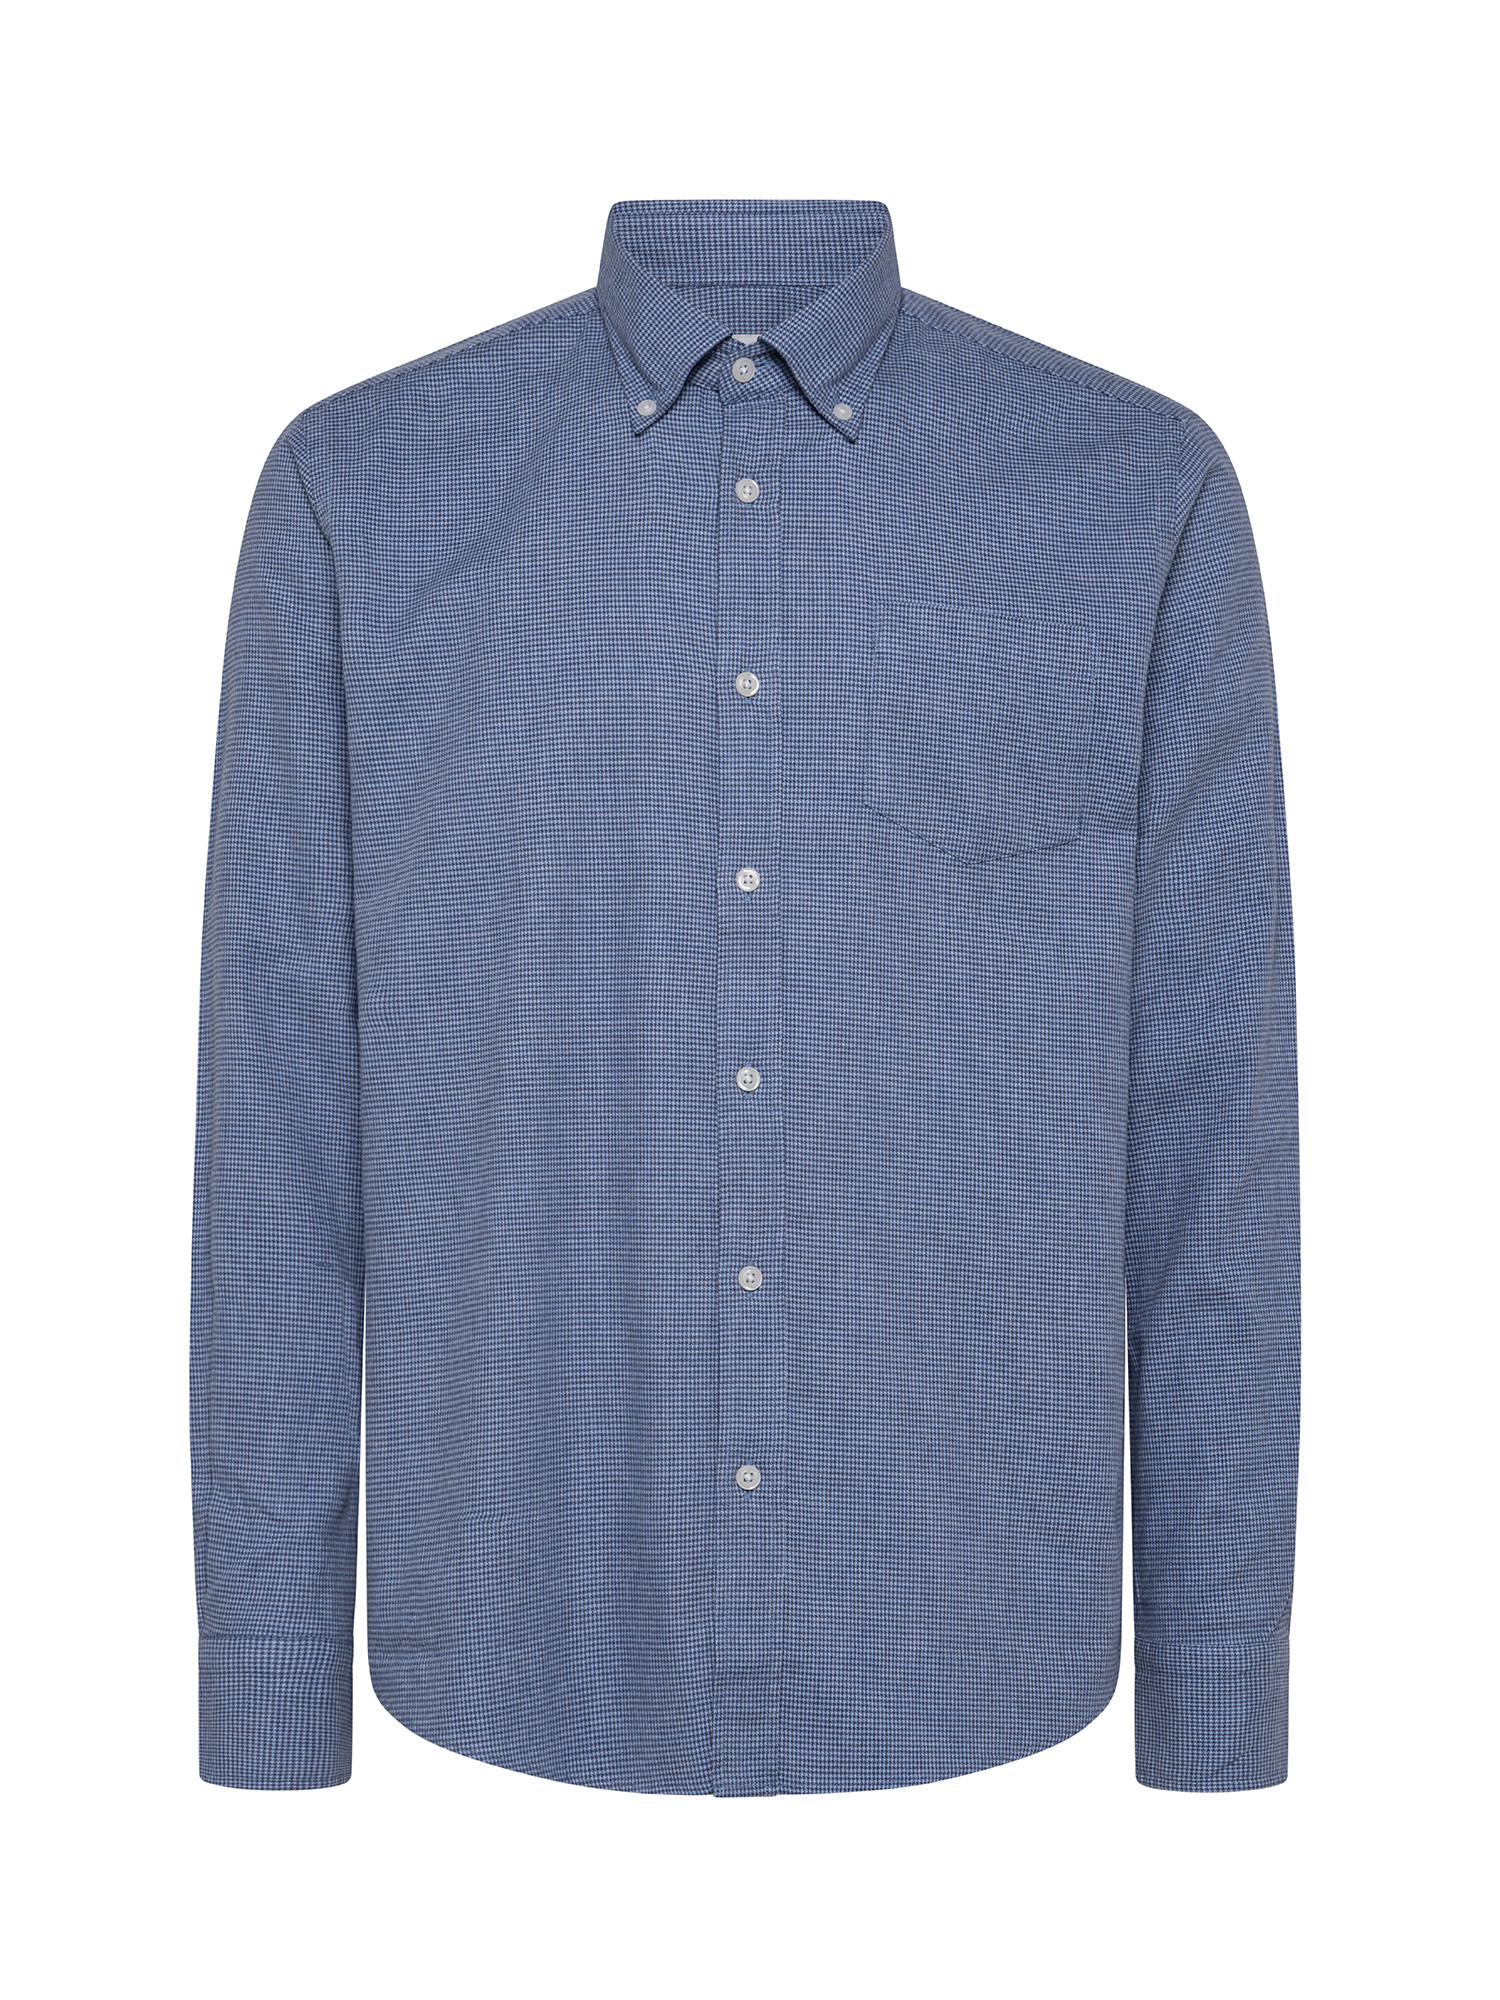 Camicia tailor fit in morbida flanella di cotone organico, Azzurro, large image number 0